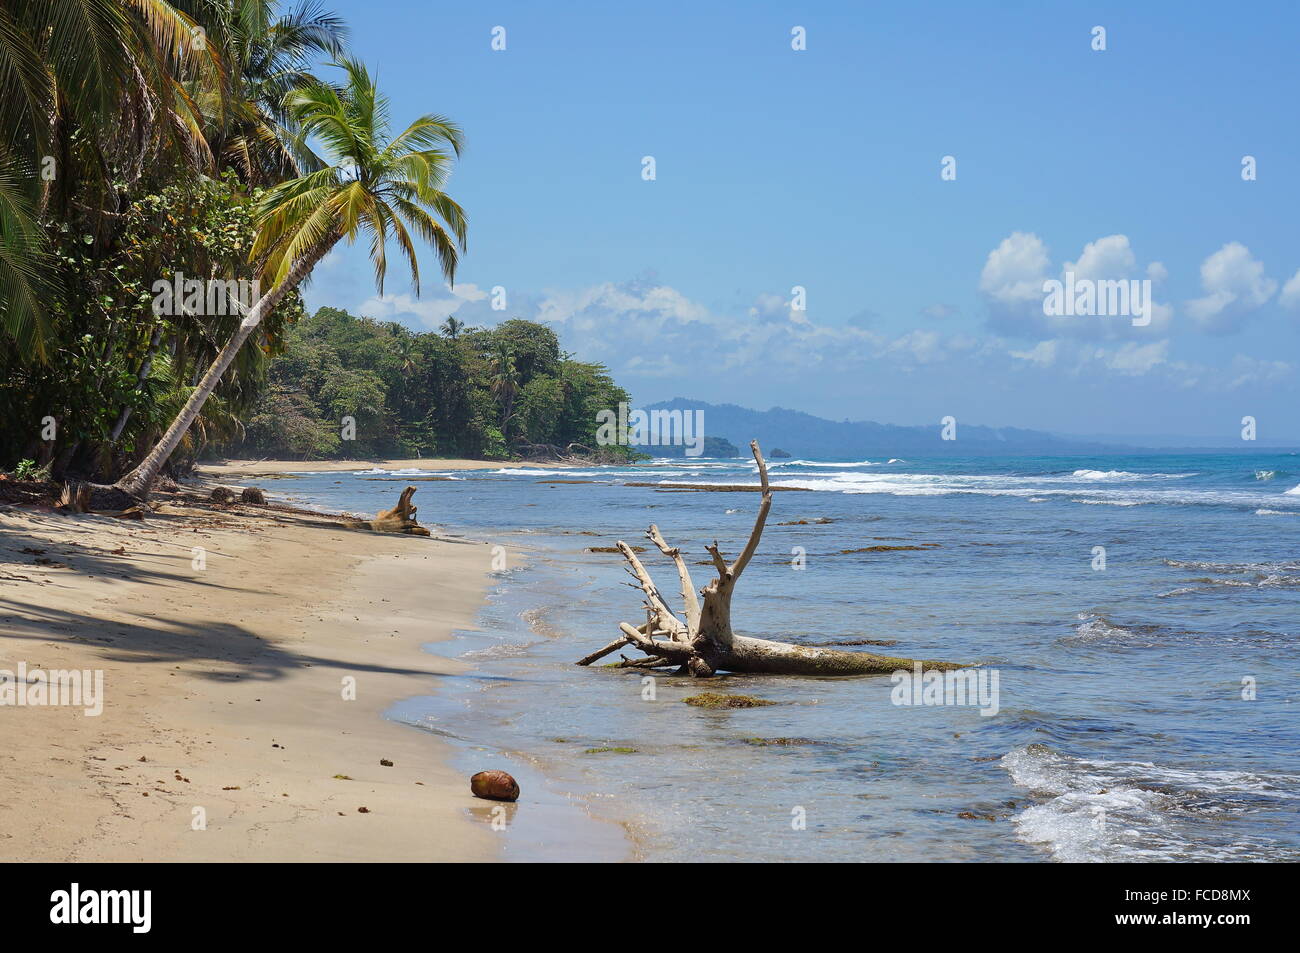 La côte des Caraïbes au Costa Rica, Chiquita beach, Puerto Viejo de Talamanca Banque D'Images